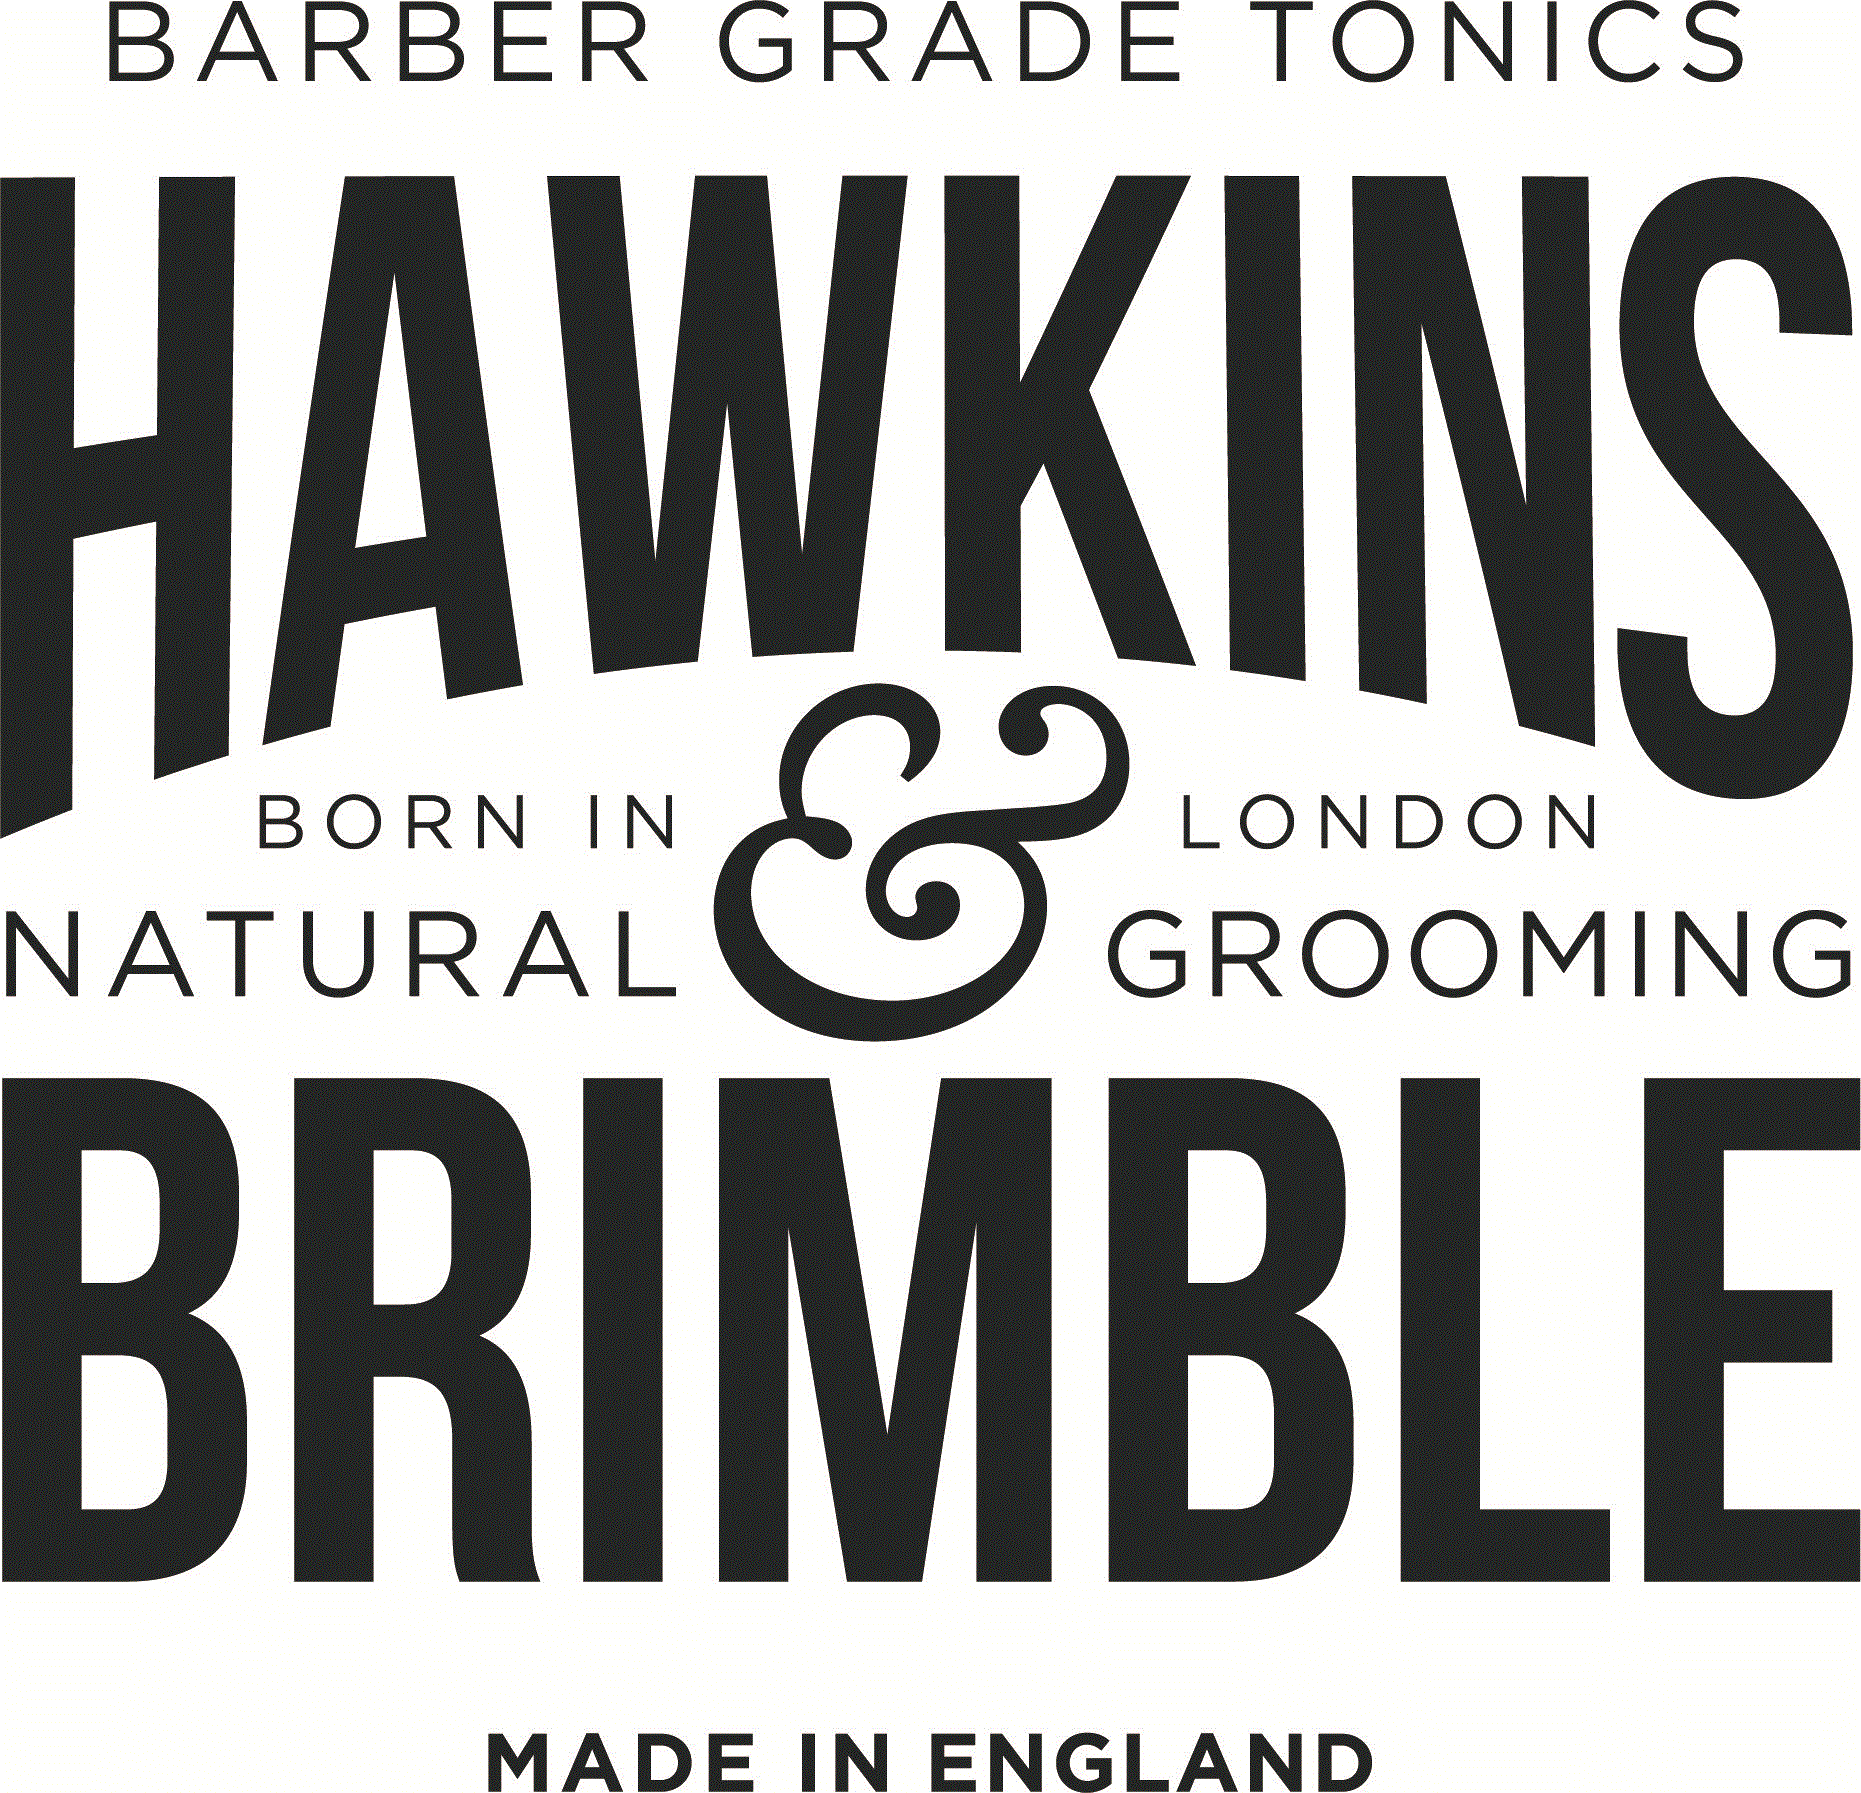 Hawkins & Brimble